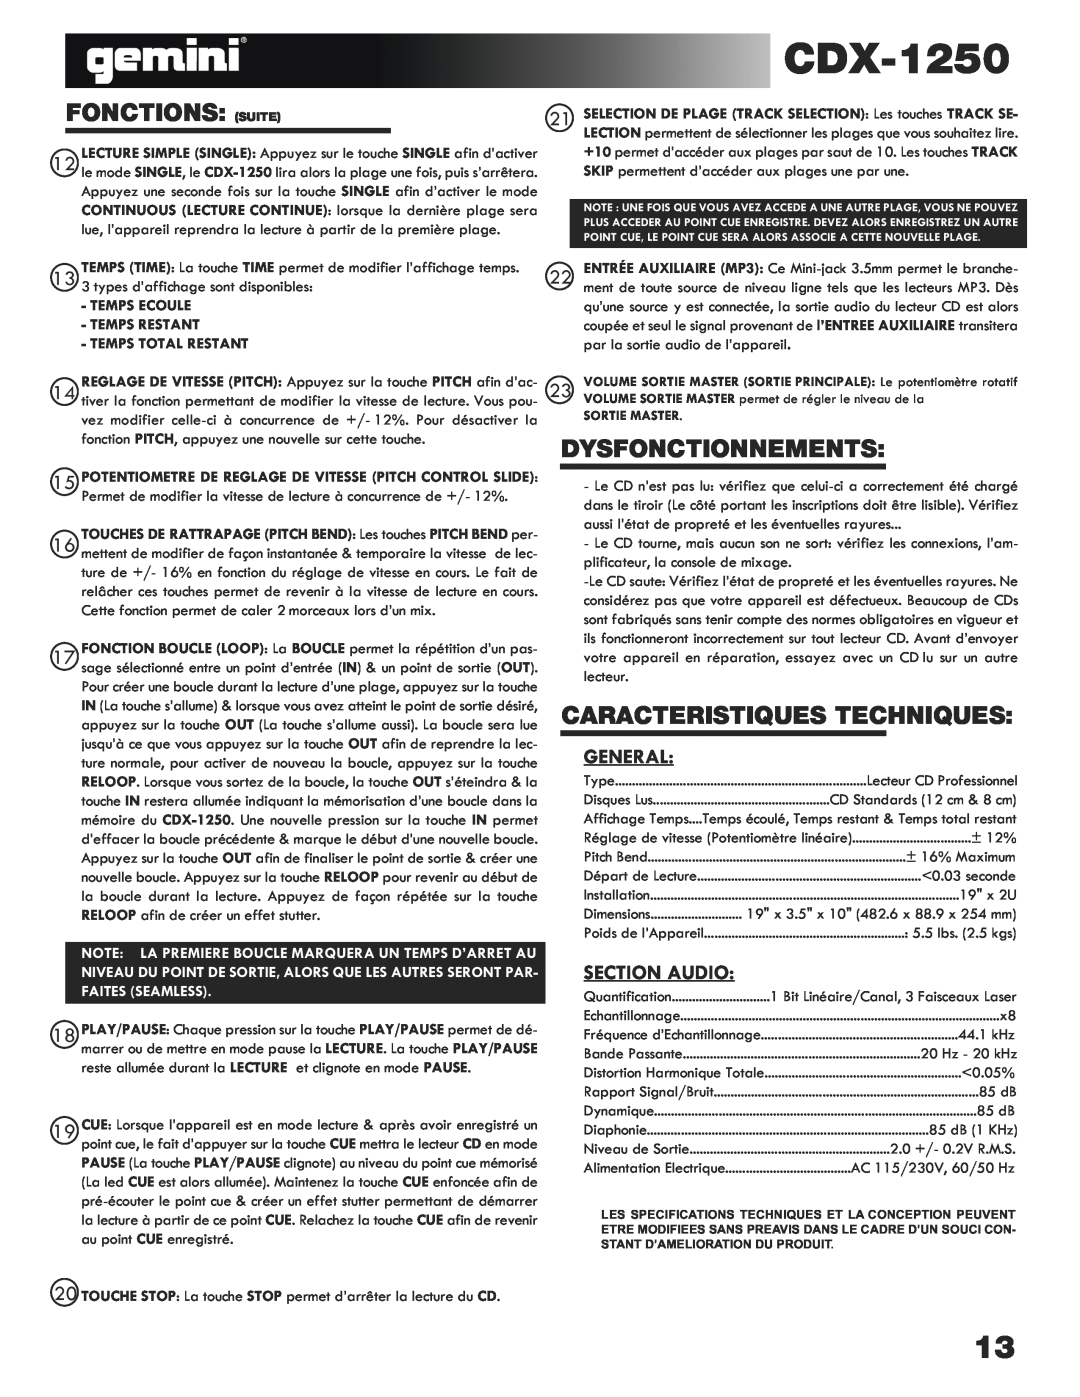 Gemini CDX-1250 manual Fonctions Suite, Dysfonctionnements, Caracteristiques Techniques, Section Audio, General 